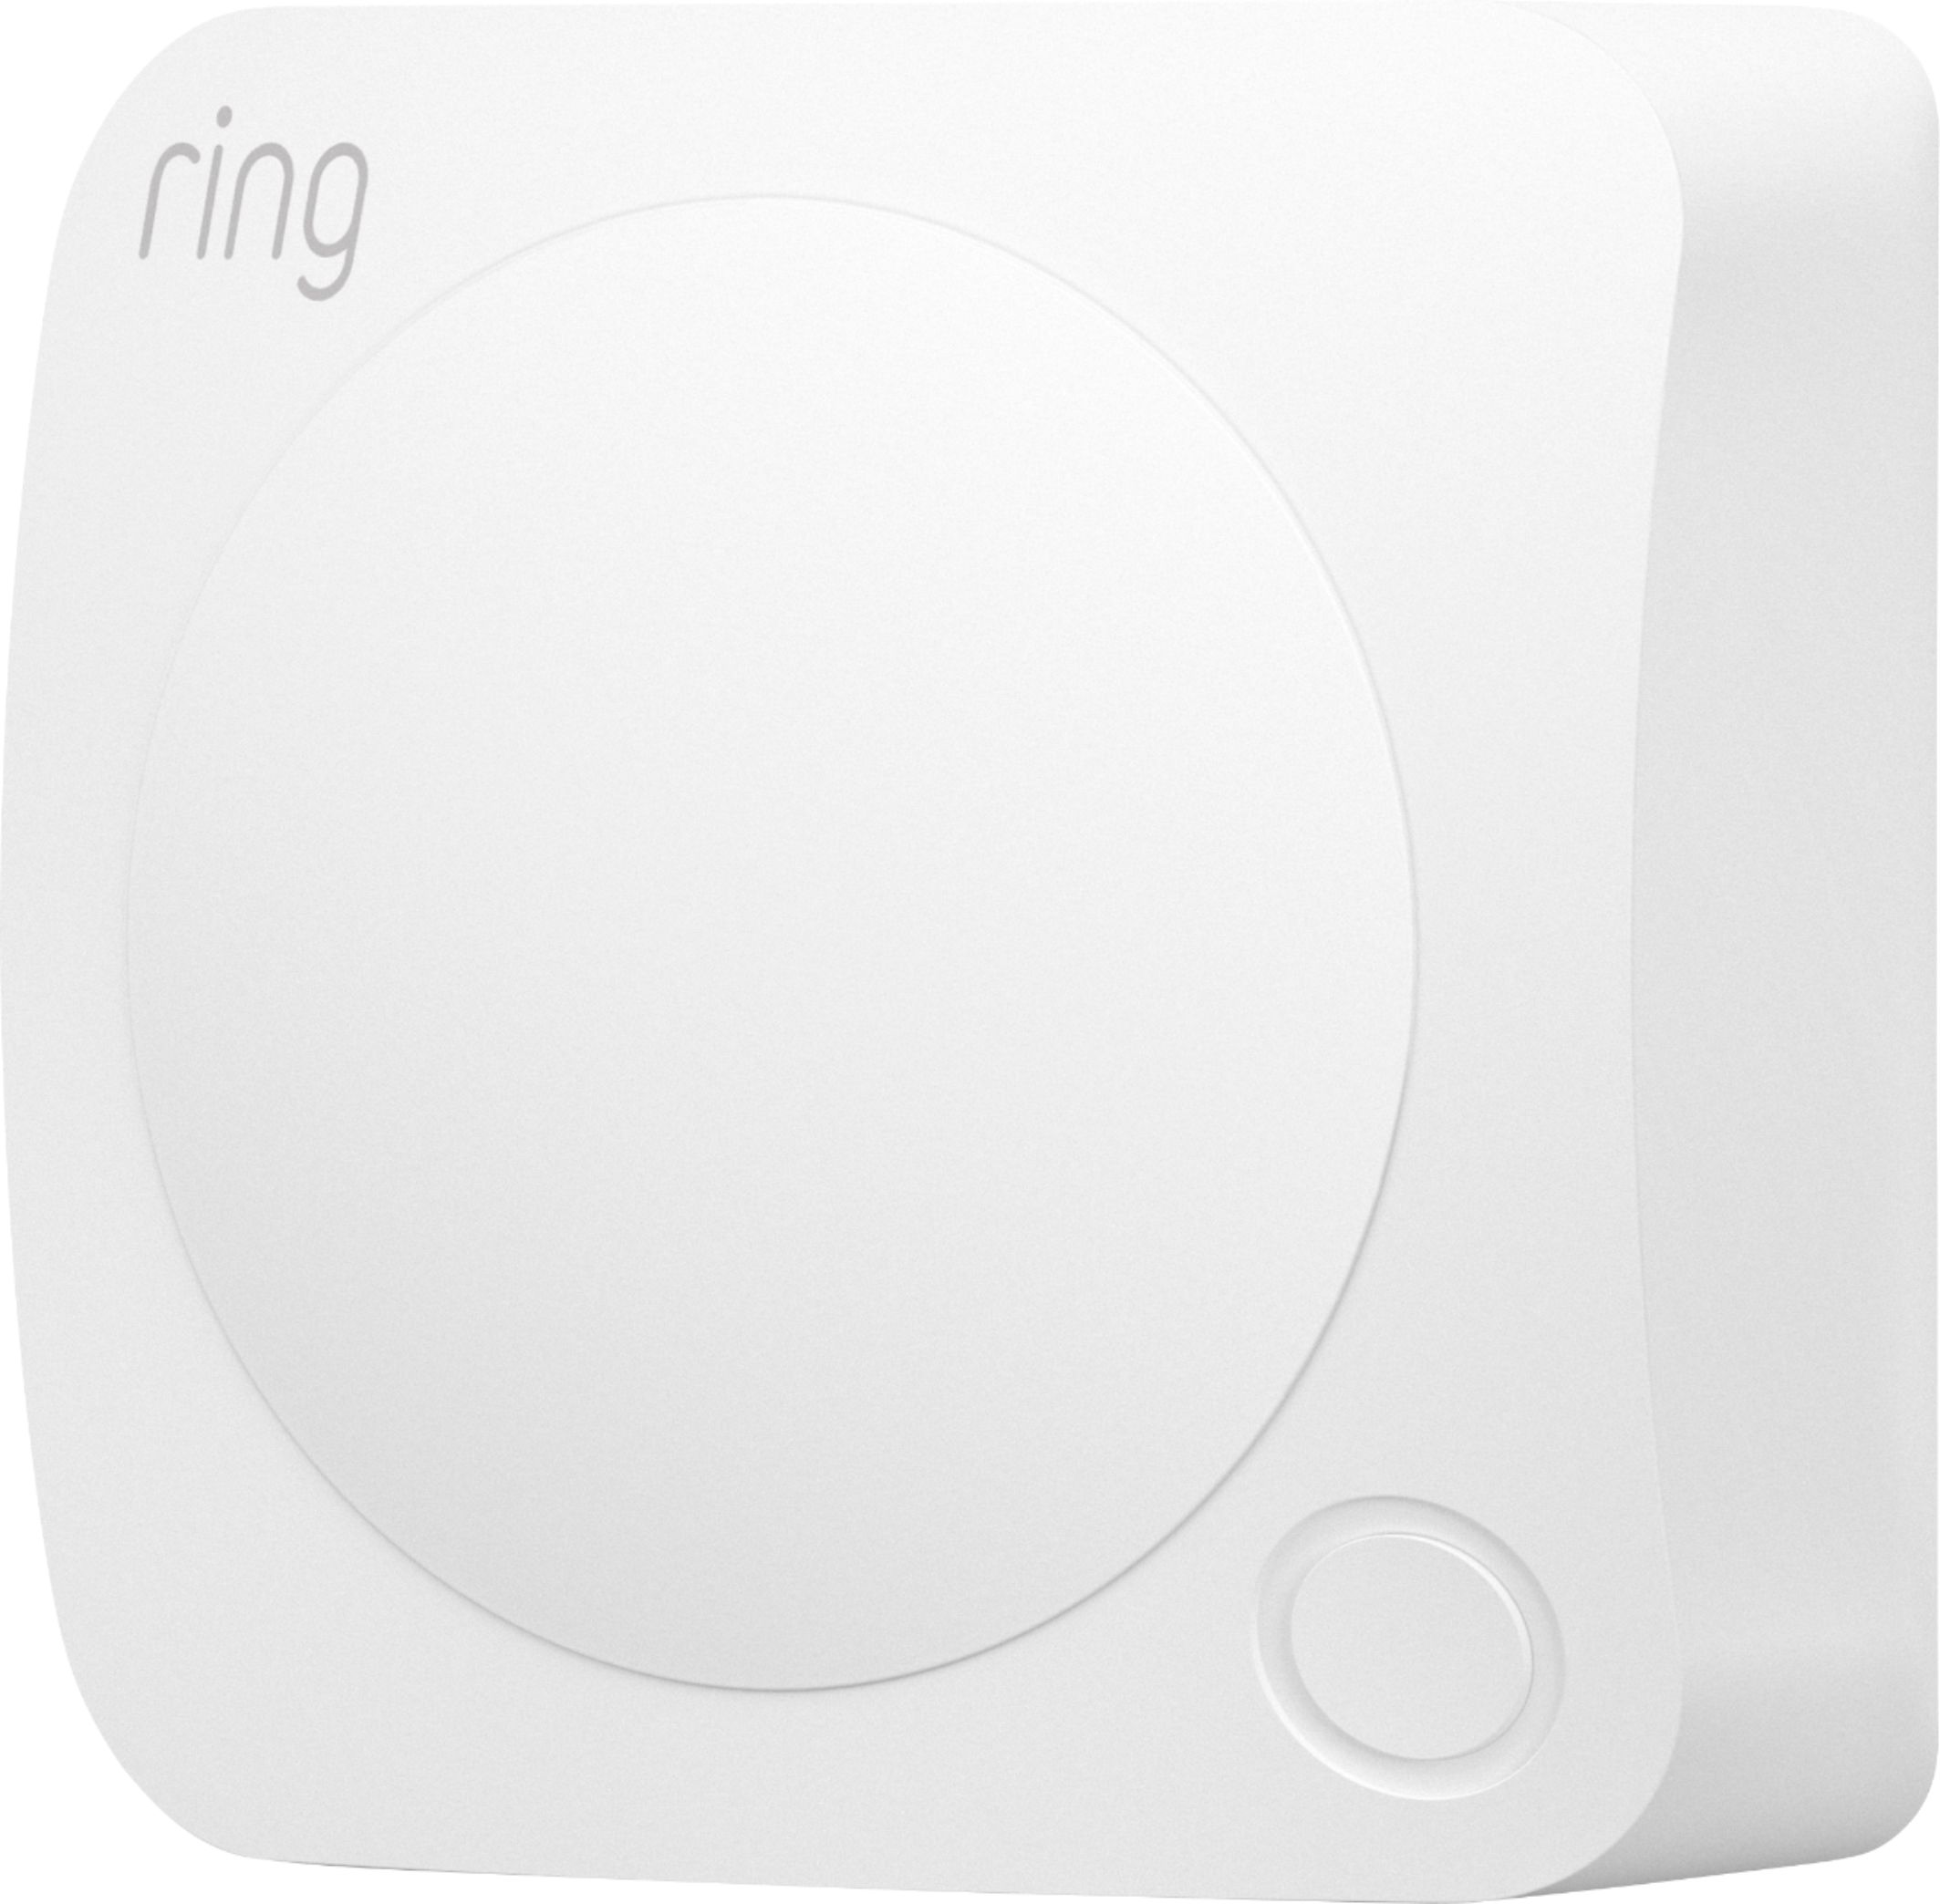 Ring Alarm Outdoor Contact Sensor 2-pack Gray B09BXZ6YX8 - Best Buy